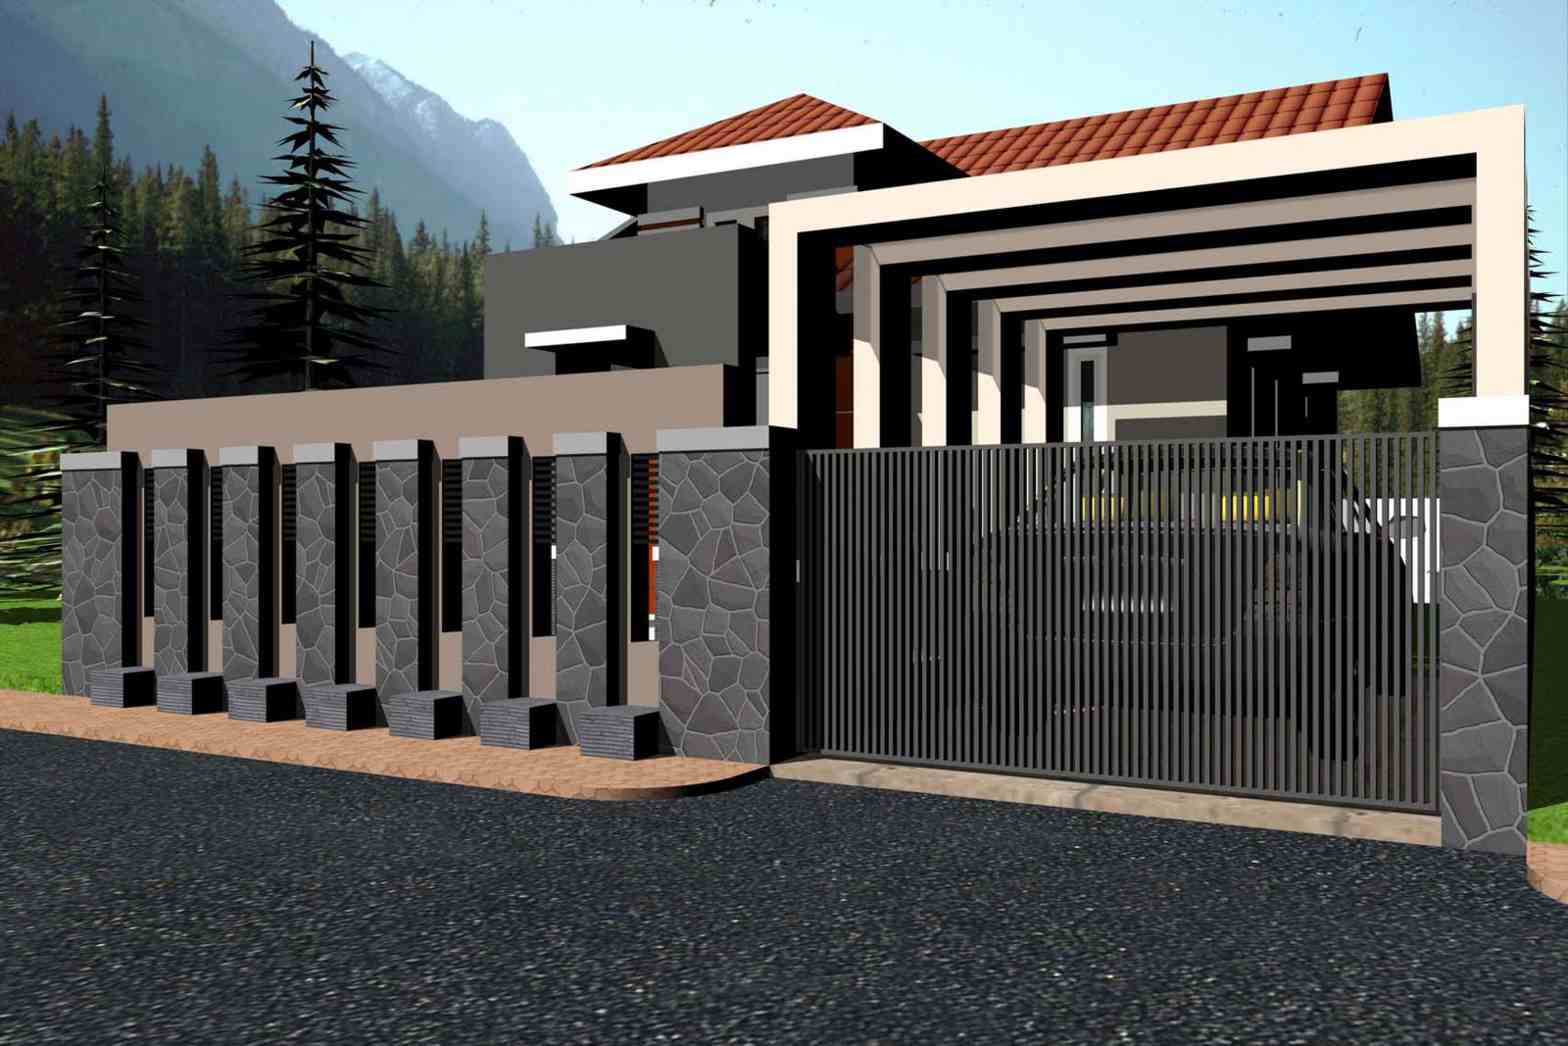 Contoh Desain Pagar Beton Rumah Minimalis Terbaru | Bentuk Pagar Rumah Minimalis Modern Dari Besi